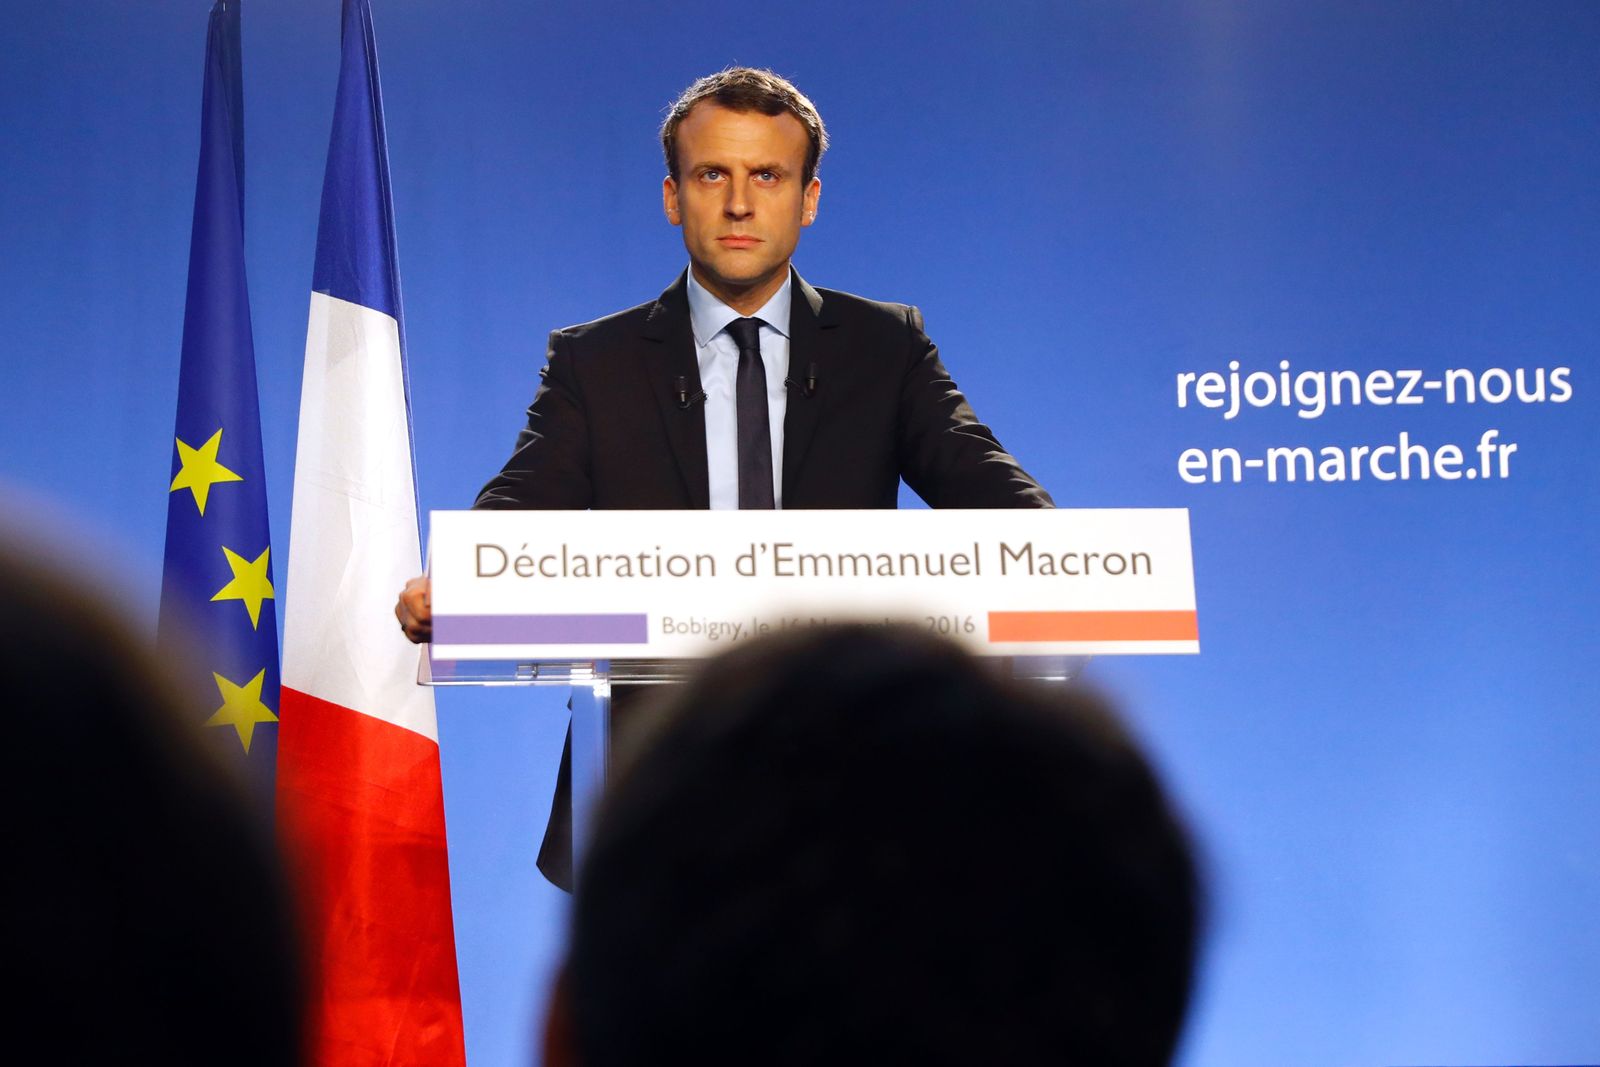 Emmanuel Macron - el nuevo presidente jesuita de Francia